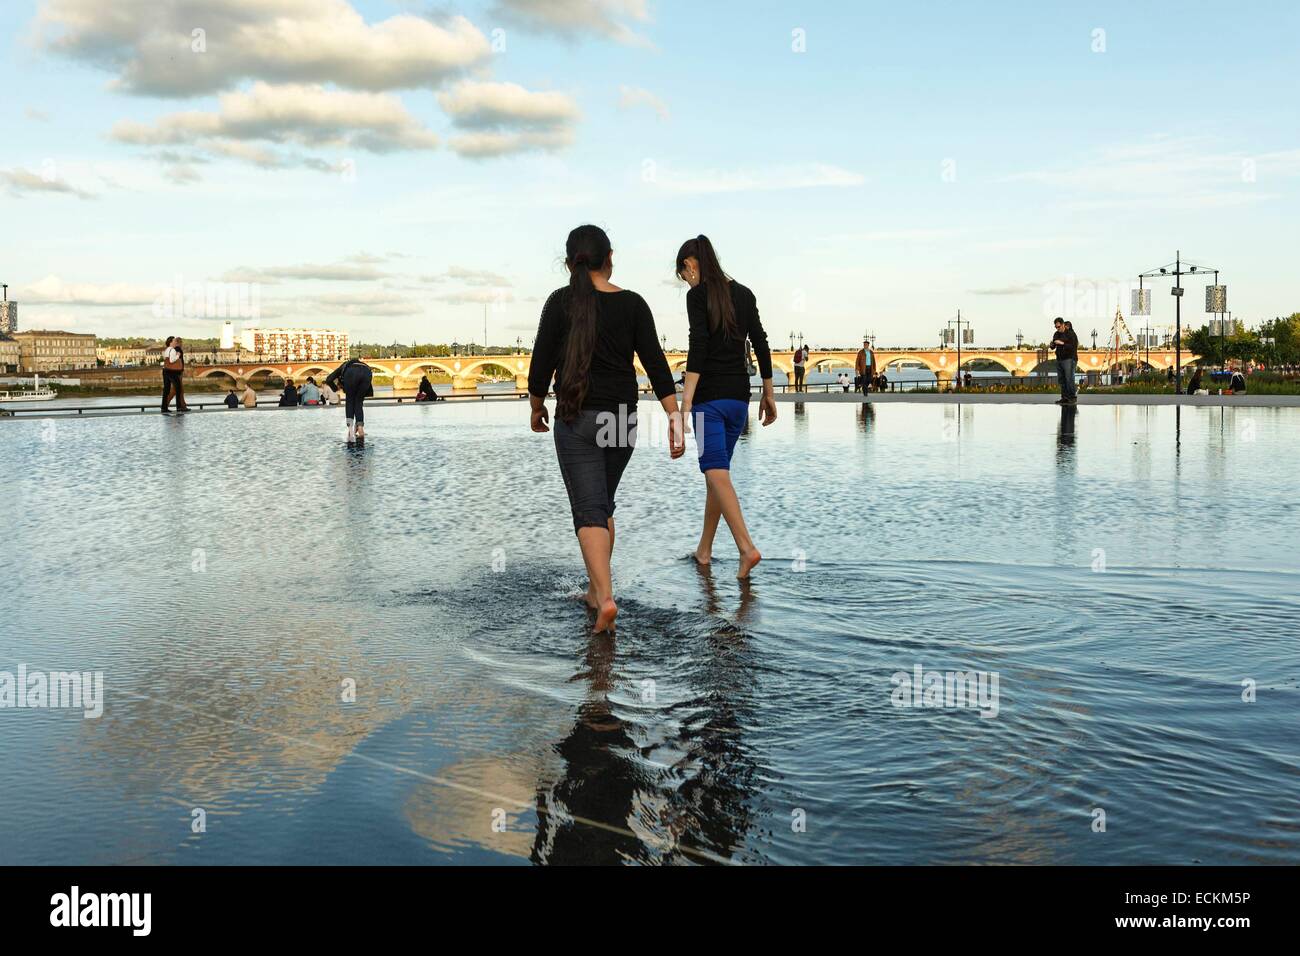 Frankreich, Gironde, Bordeaux, Bereich aufgeführt als Weltkulturerbe der UNESCO, Marschall Lyautey Tor, Bourse Ort La Lune Hafen Mädchen barfuß laufen auf einer Wasseroberfläche Stockfoto